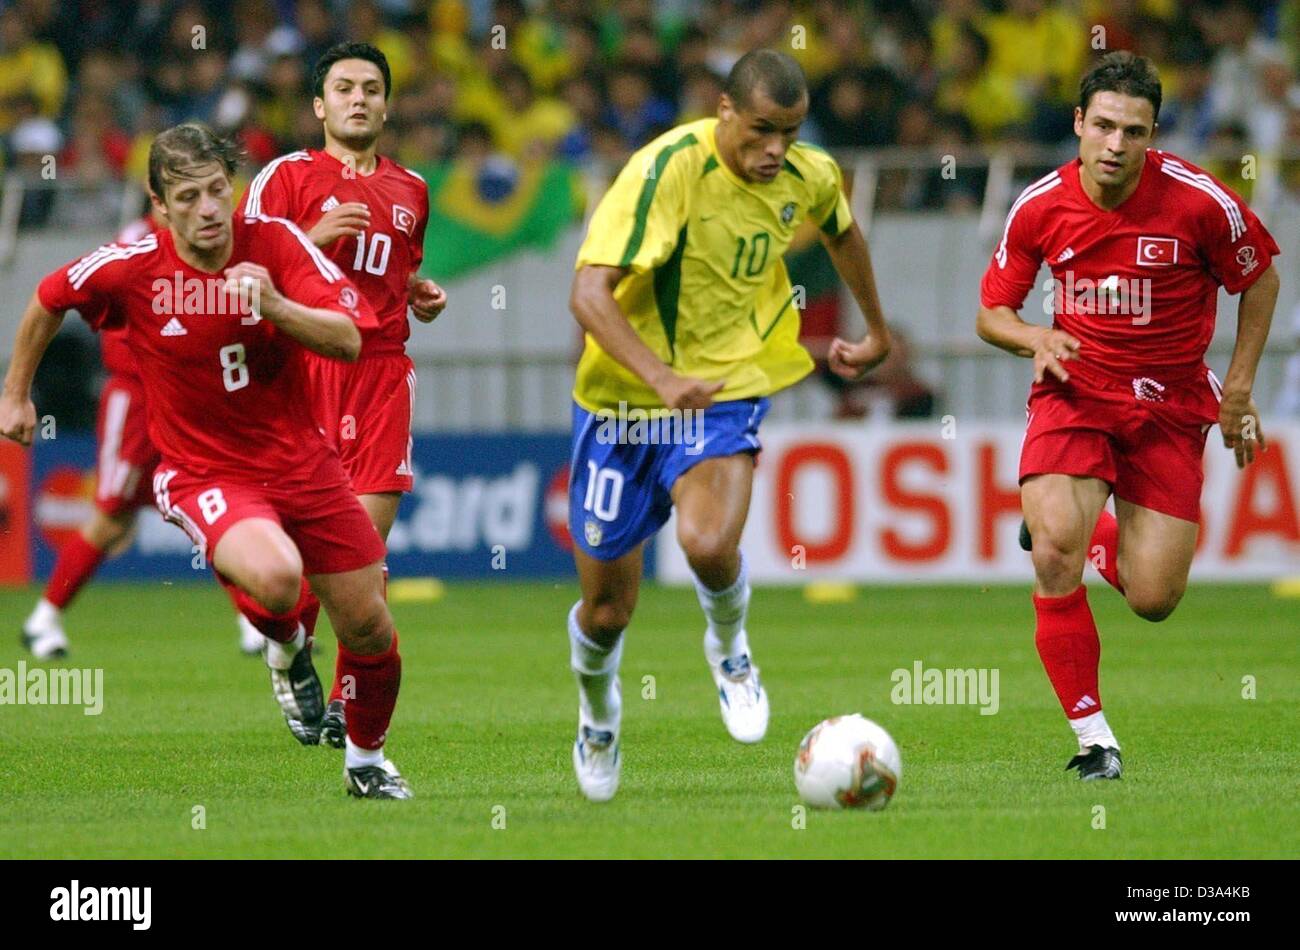 (Afp) - Le milieu de terrain brésilien Rivaldo (C) est chassé par les joueurs turc Tugay Kerimoglu (L), Yildiray Bastuerk et Fatih Akyel (R) au cours de la demi-finale dans le stade de Saitama, Japon, le 26 juin 2002. Le match s'est terminé 1:0 pour le Brésil, qui est qualifié pour la 7ème fois pour la finale de la Coupe du monde. Banque D'Images